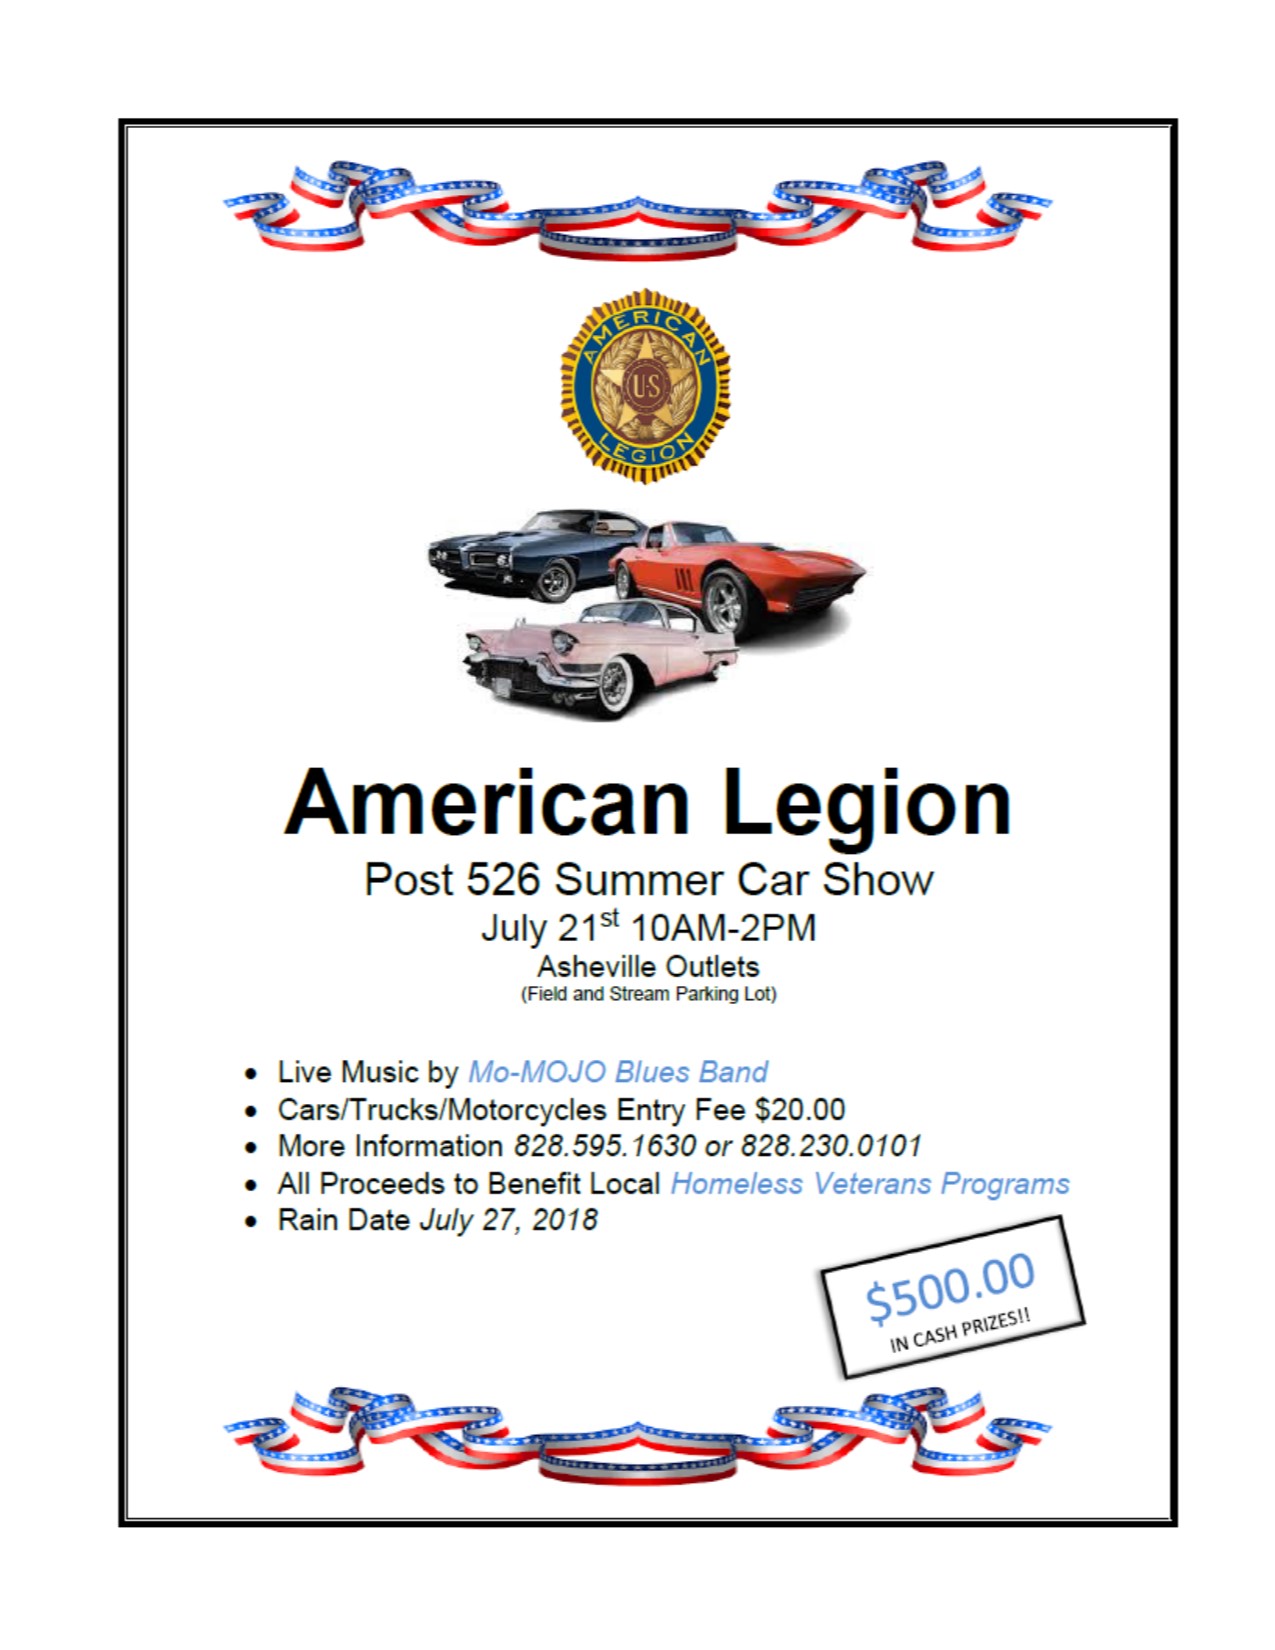 American Legion Summer Car Show